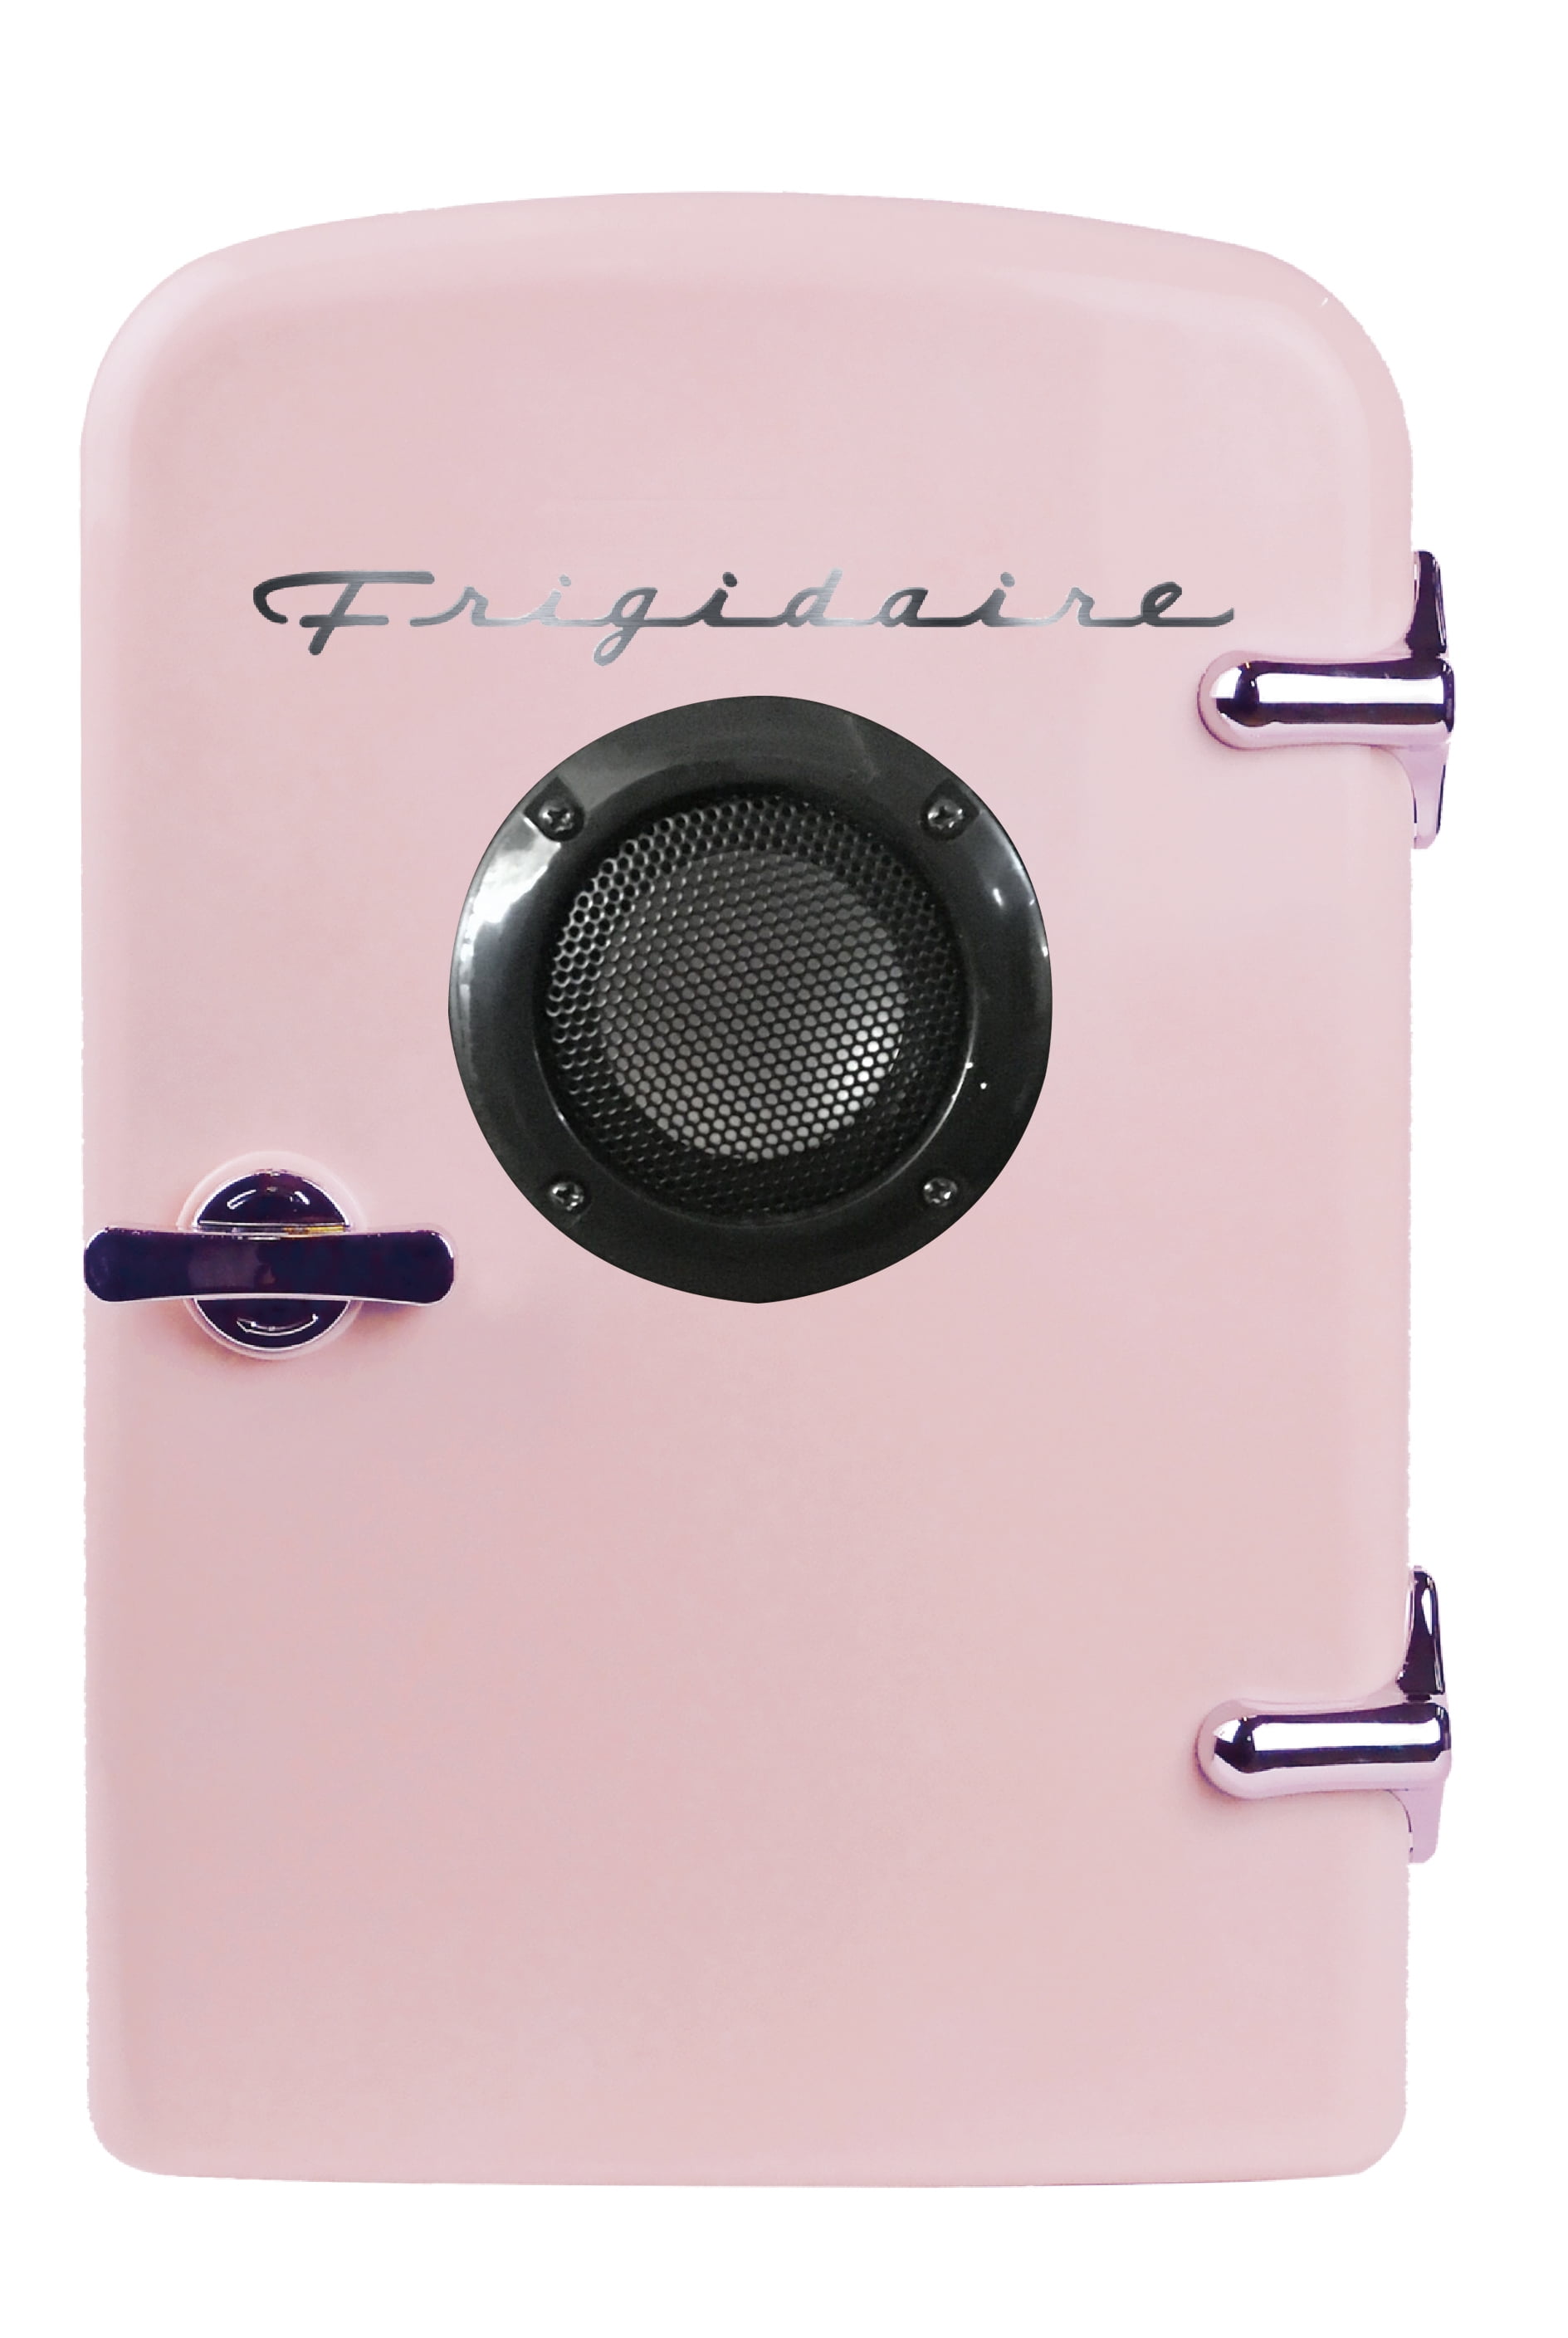 Frigidaire Portable Retro 9-Can Pink Mini Fridge Cooler 110V & 12V Car Adapters